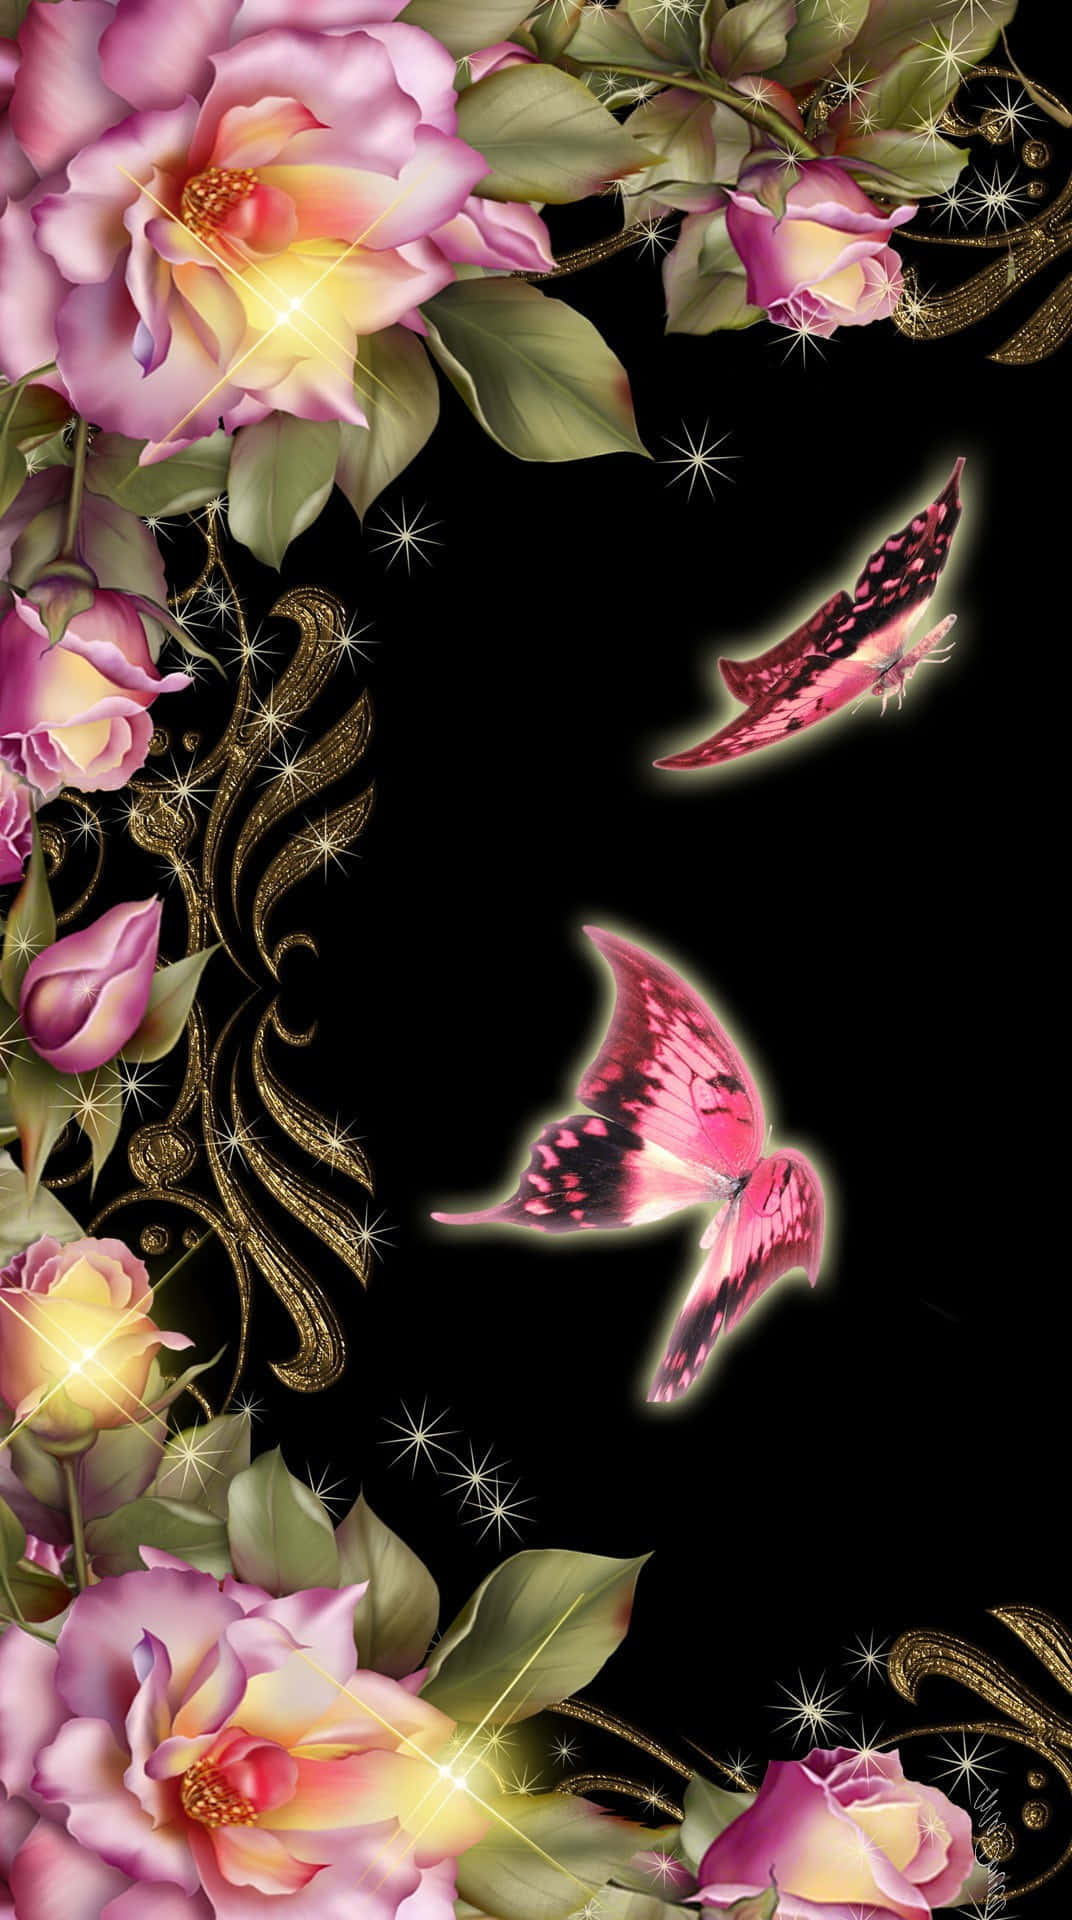 Pink glitter skinner i lyset, da en sart sommerfugl smukt svæver forbi. Wallpaper